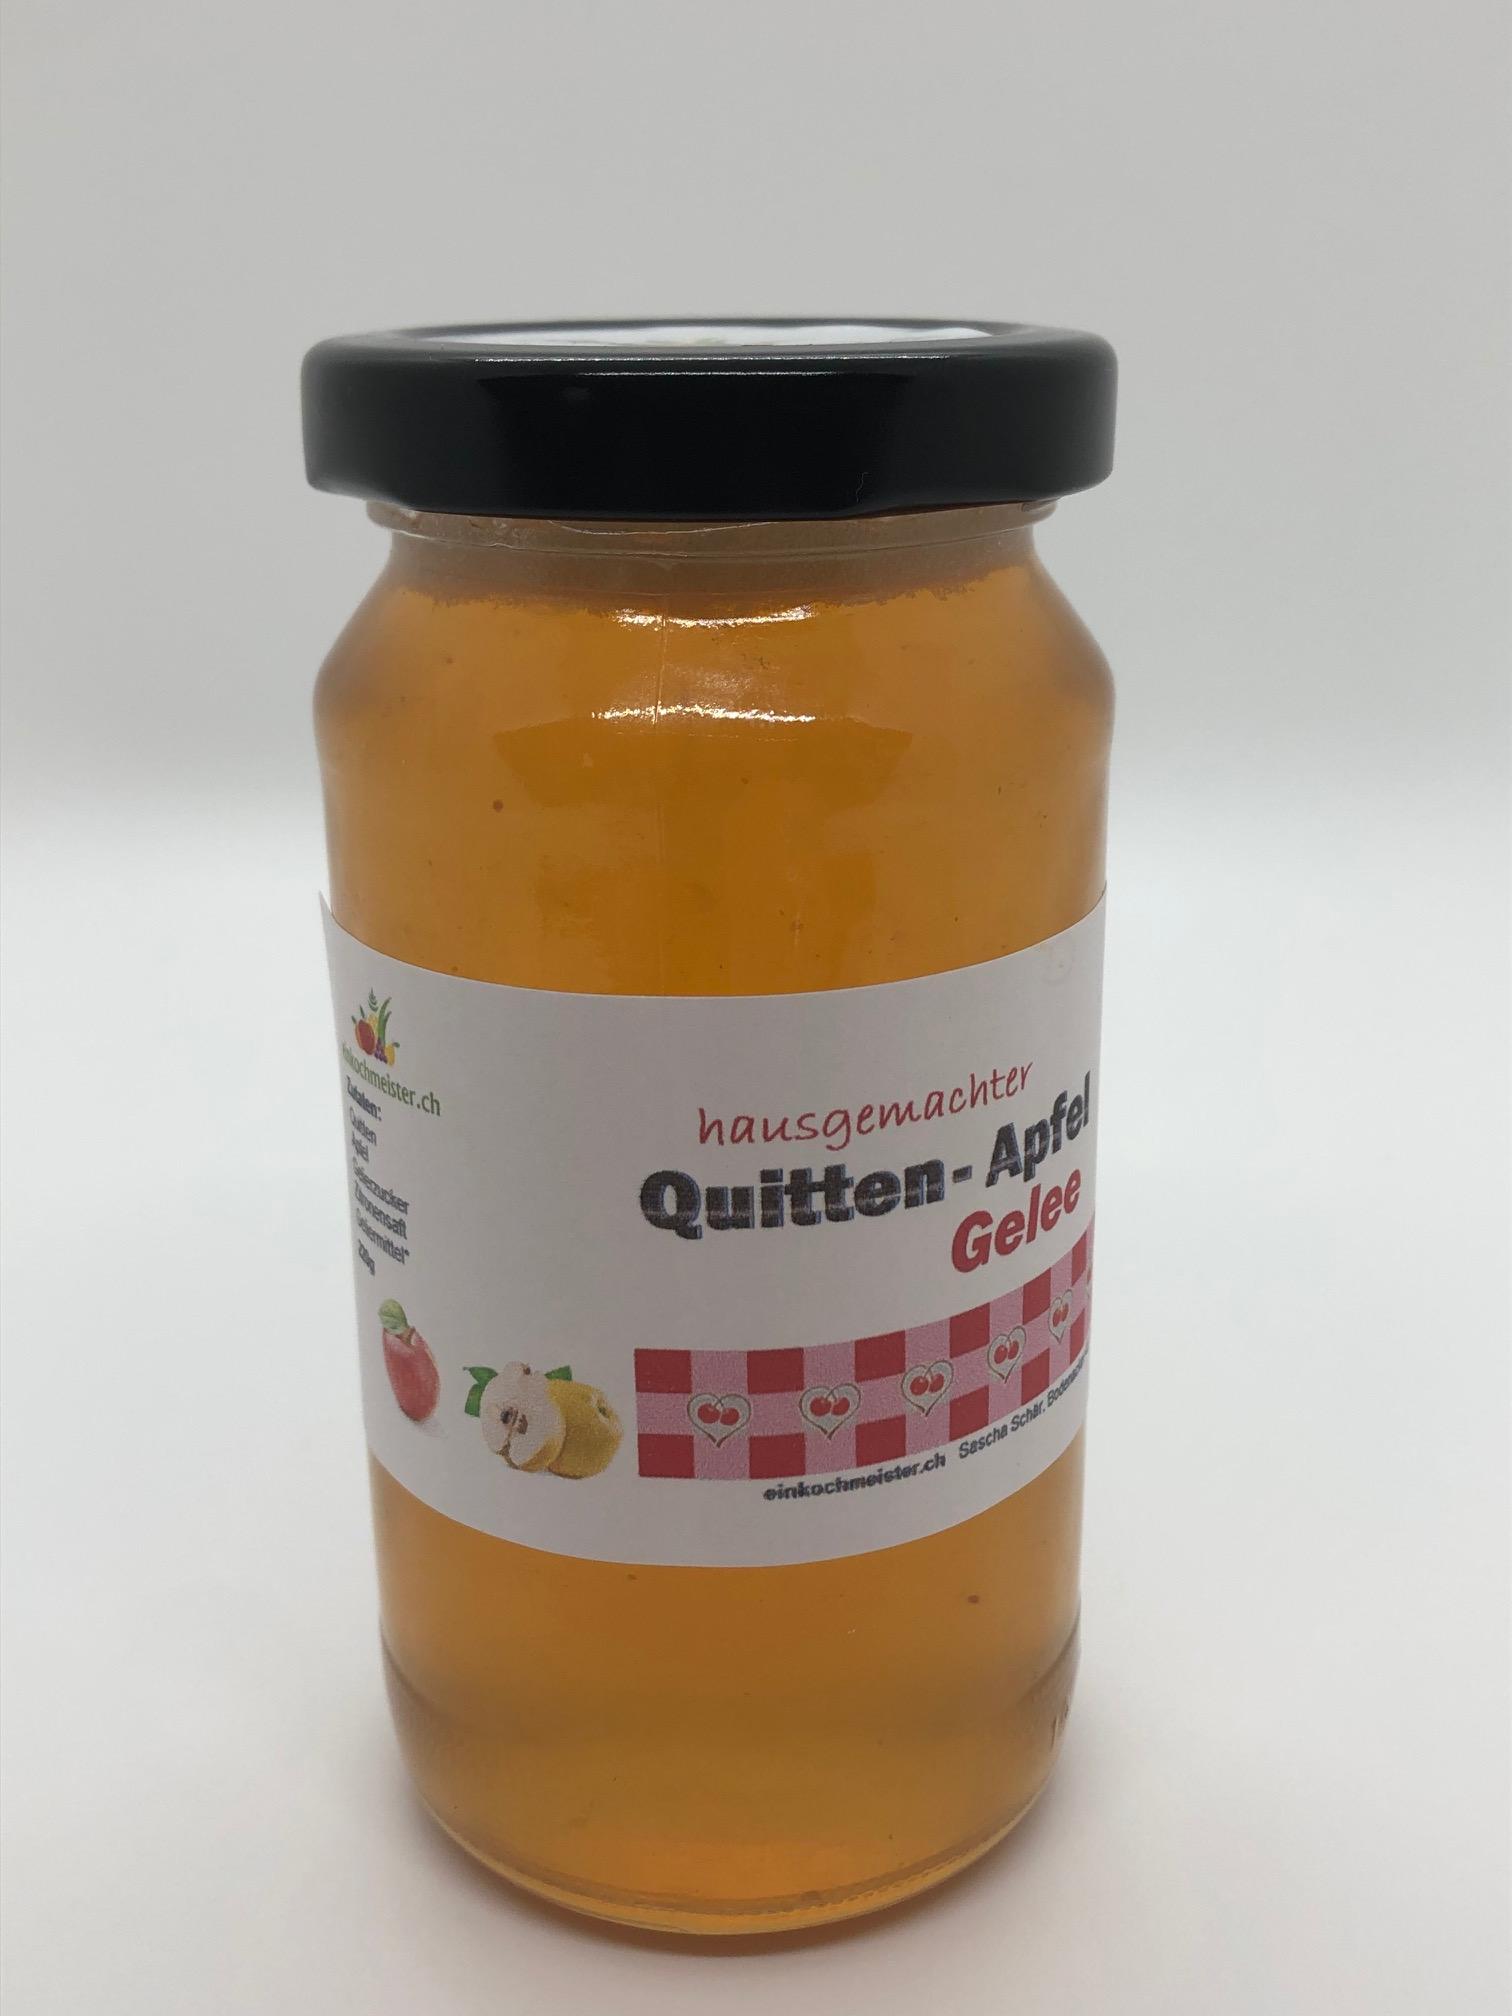 030 Quitten-Apfel Gelee